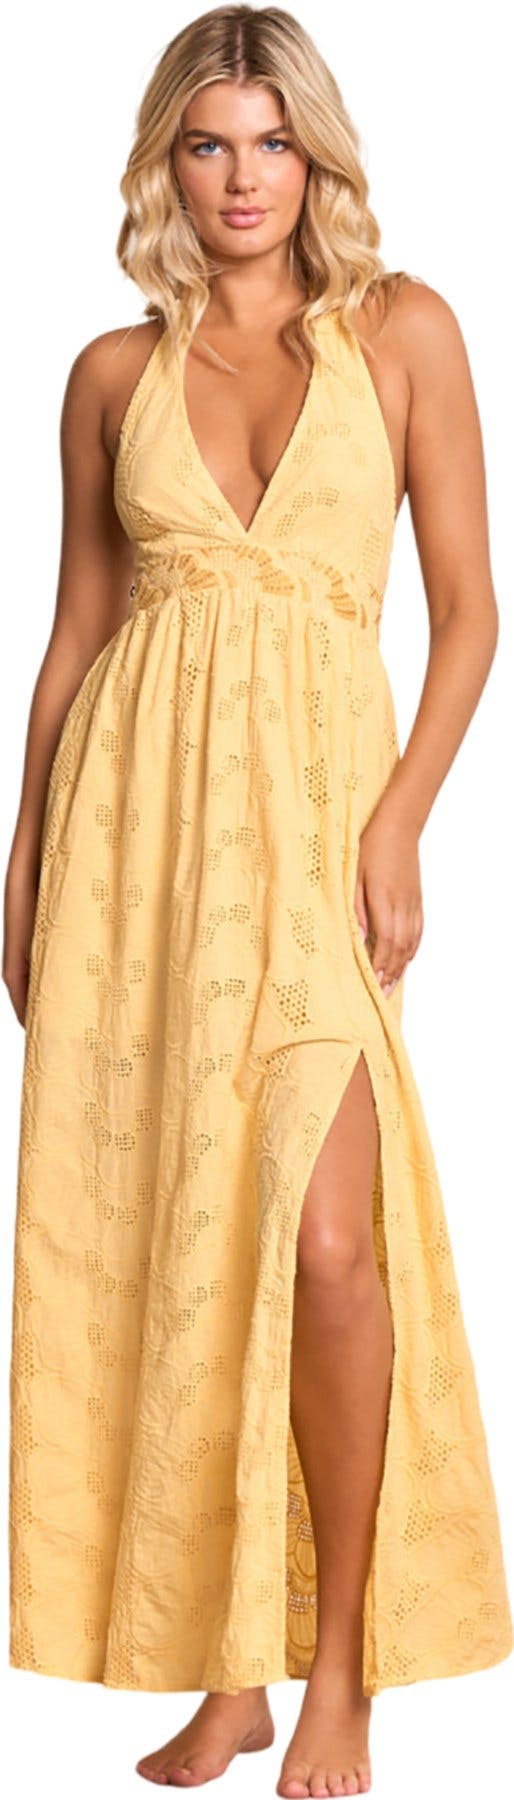 Product image for Athenea Saffron Long Dress - Women's